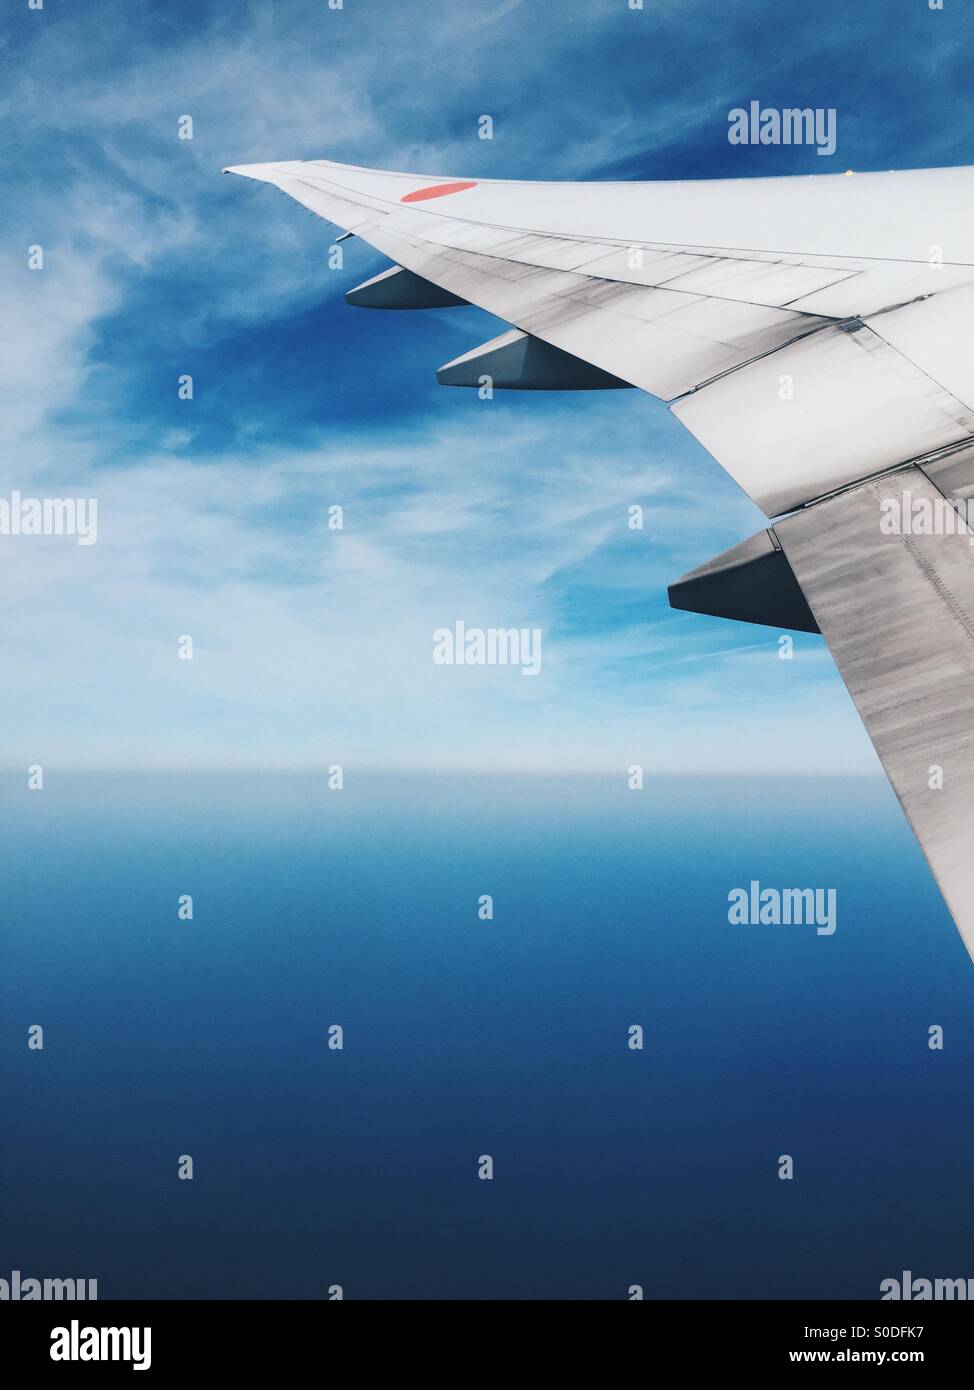 La visualizzazione della finestra di ala di aeroplano di All-Nippon Airways Boeing 777-300 con il blu del cielo e del mare sullo sfondo. Foto Stock